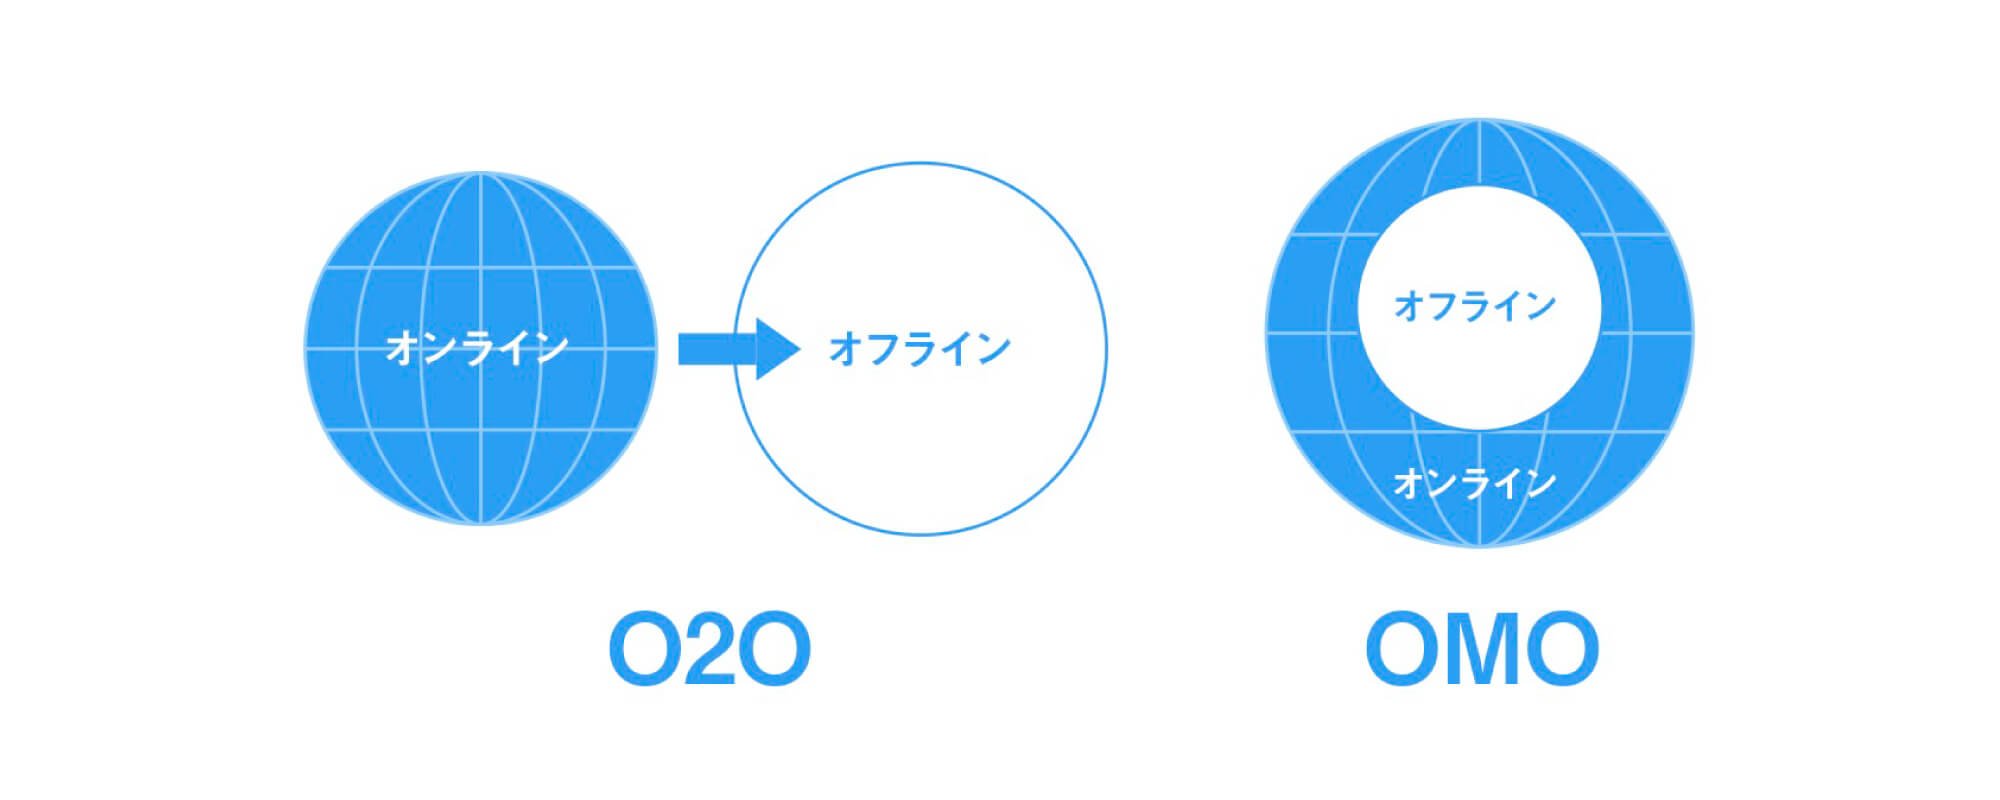 O2OとOMOの違いを表した図